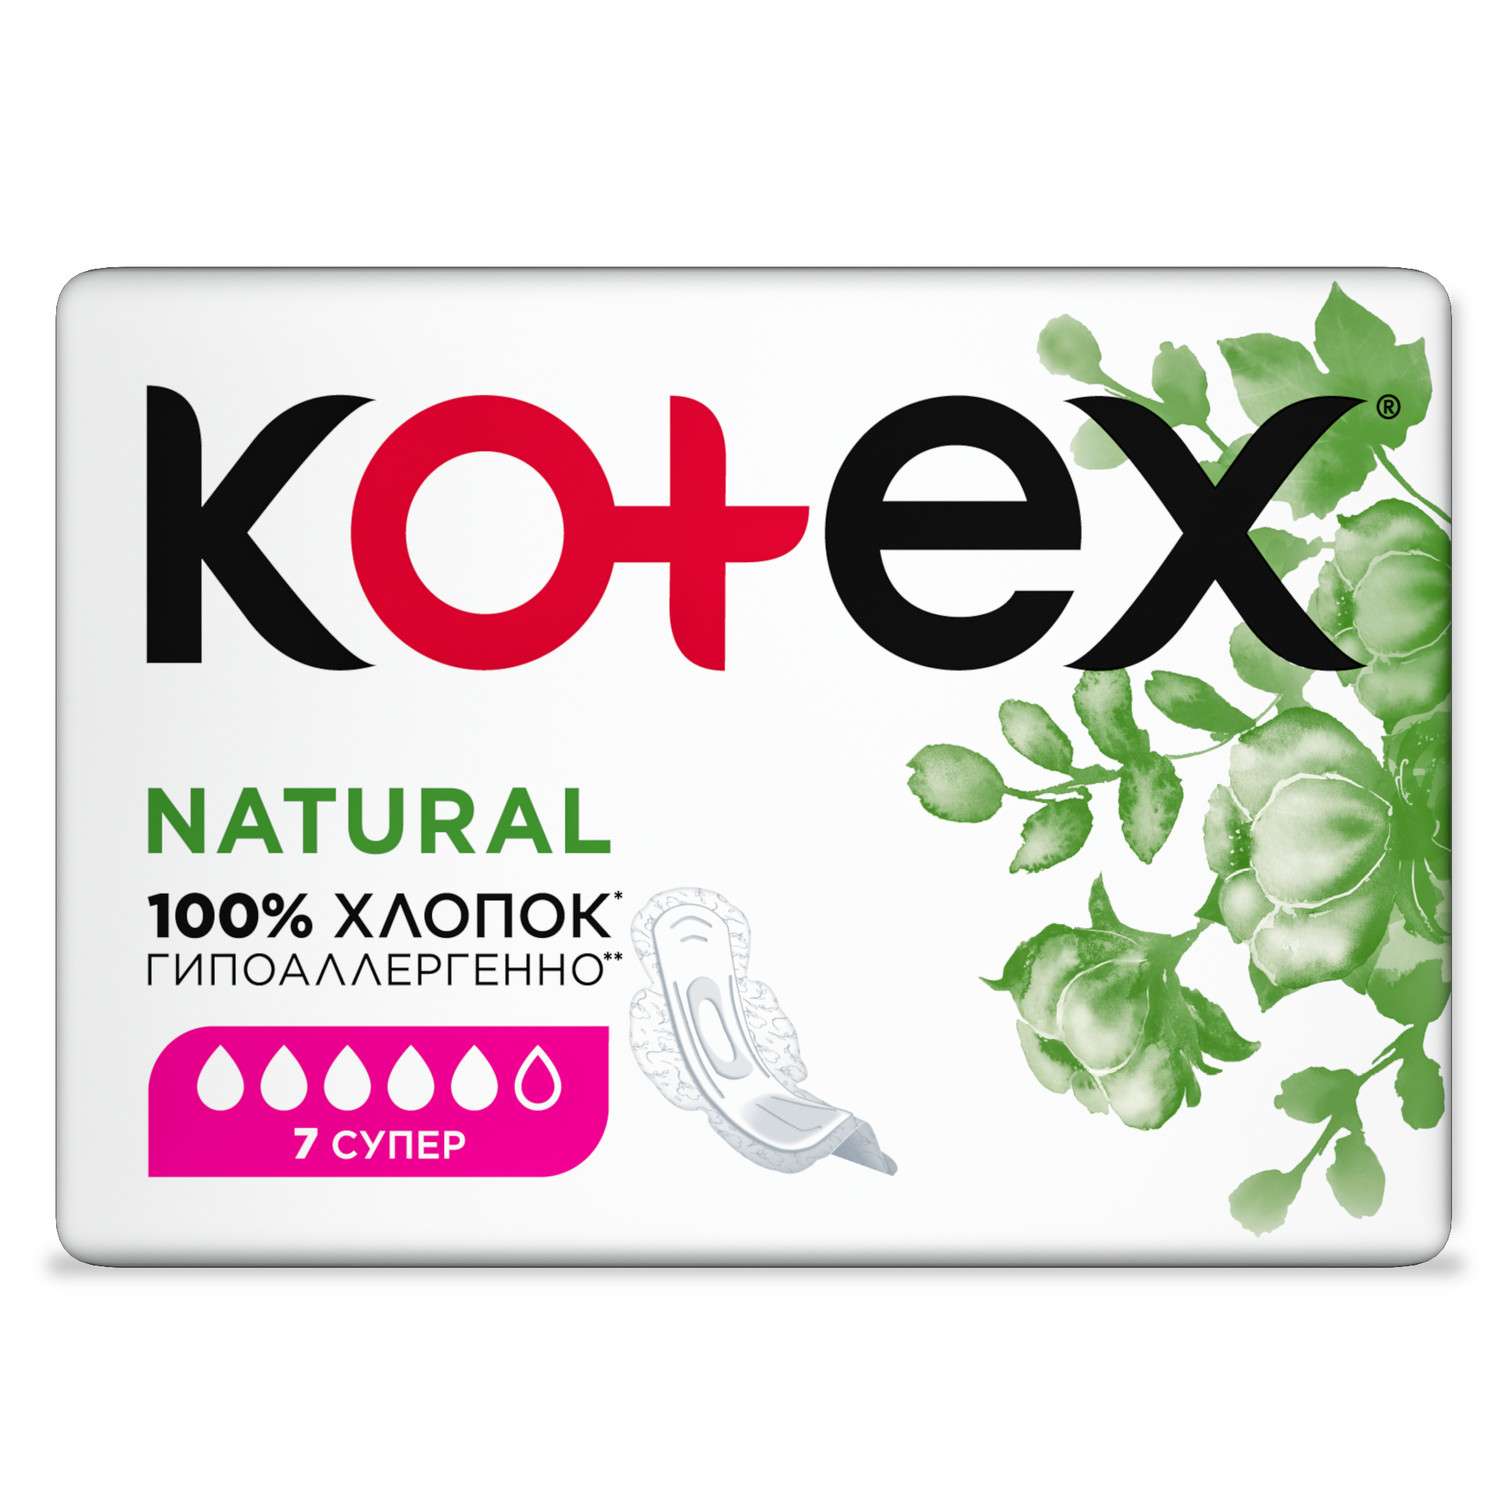 Прокладки KOTEX Natural Super 7шт - фото 3